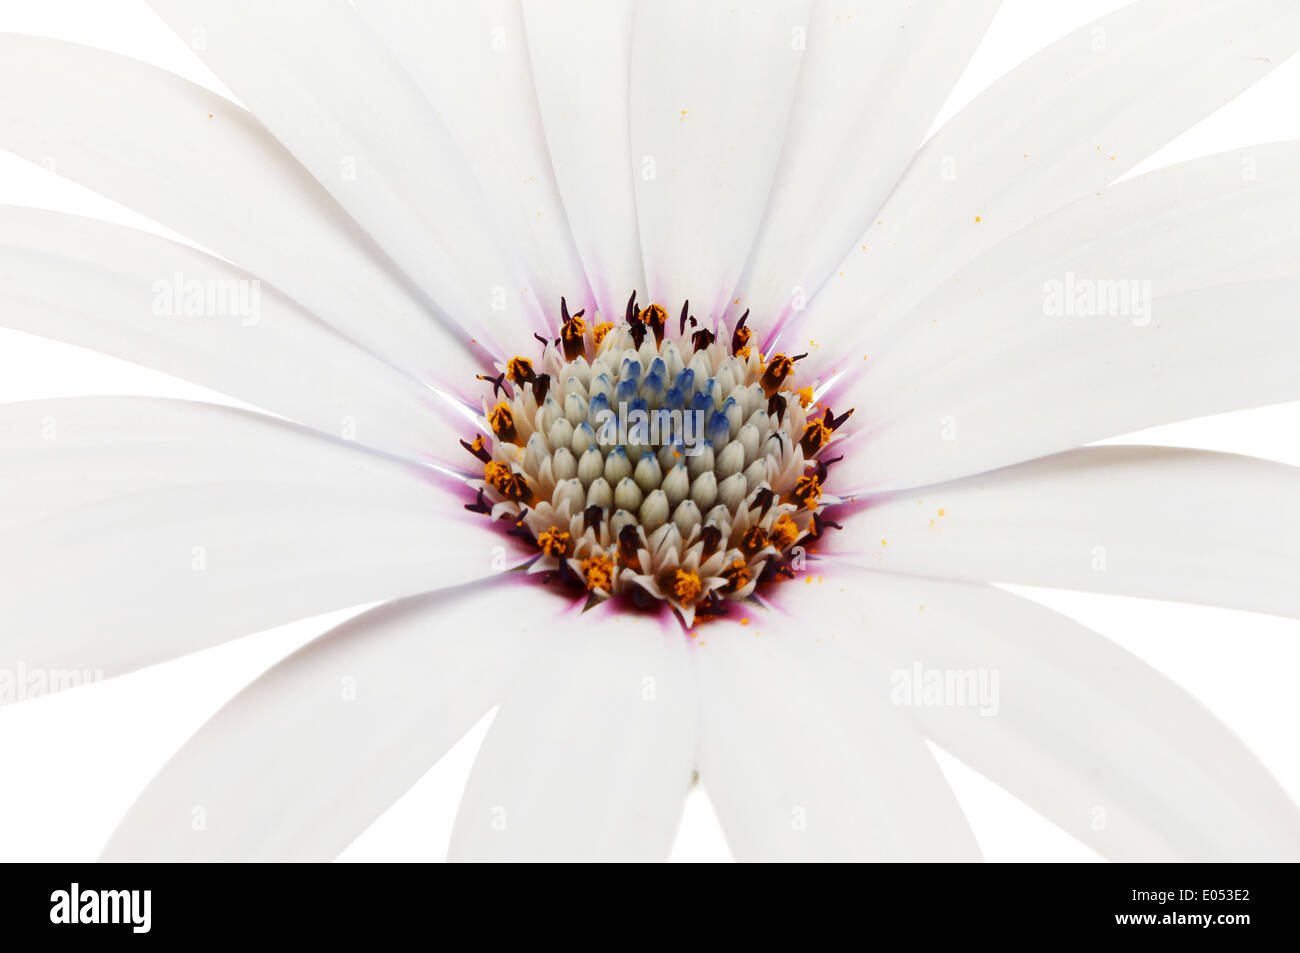 Closeup of the center of an osteospermum flower Stock Photo